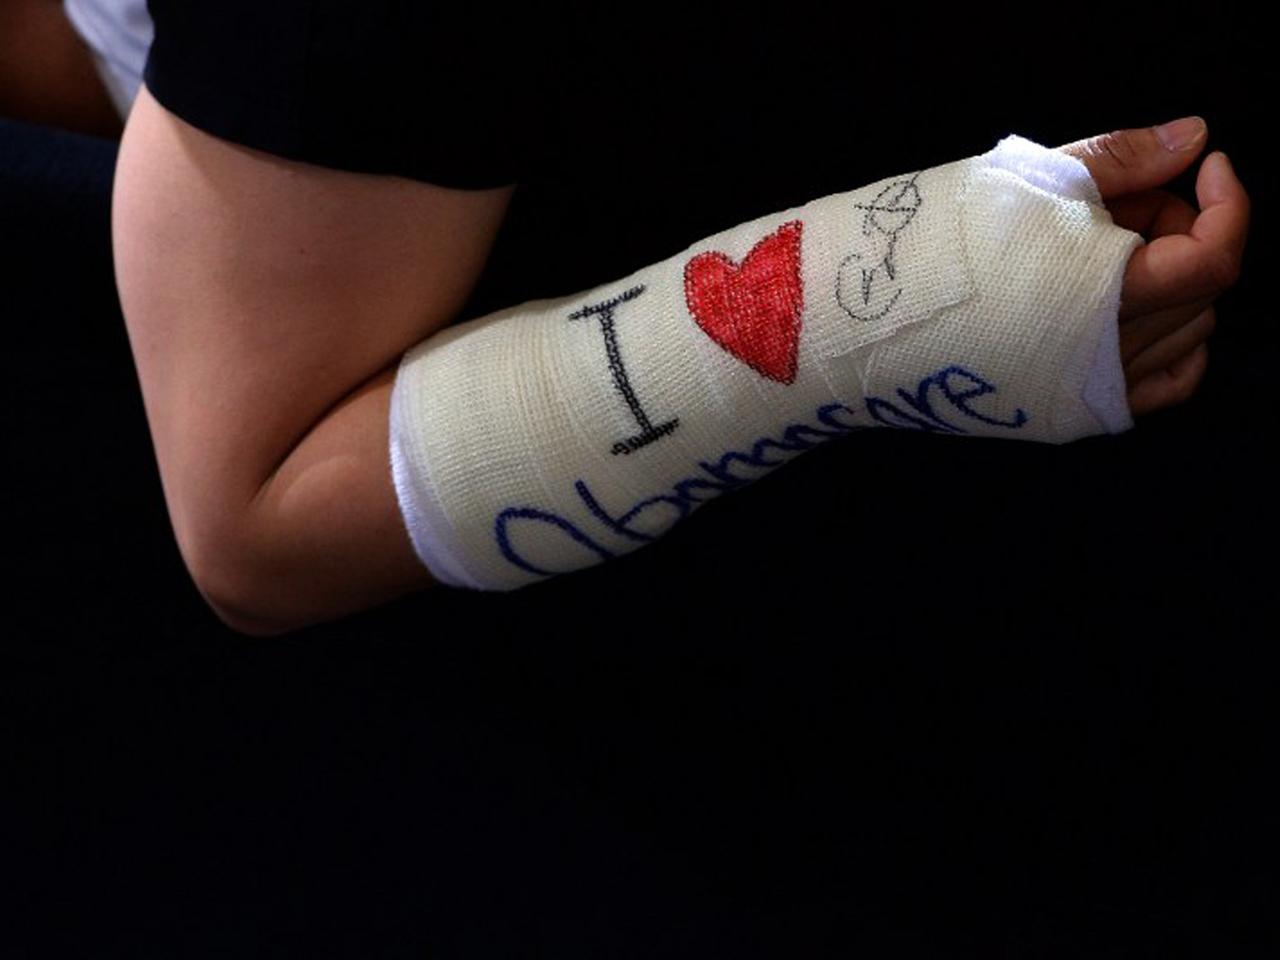 Gips am Arm mit der Aufschrift;: "I love Obamacare"